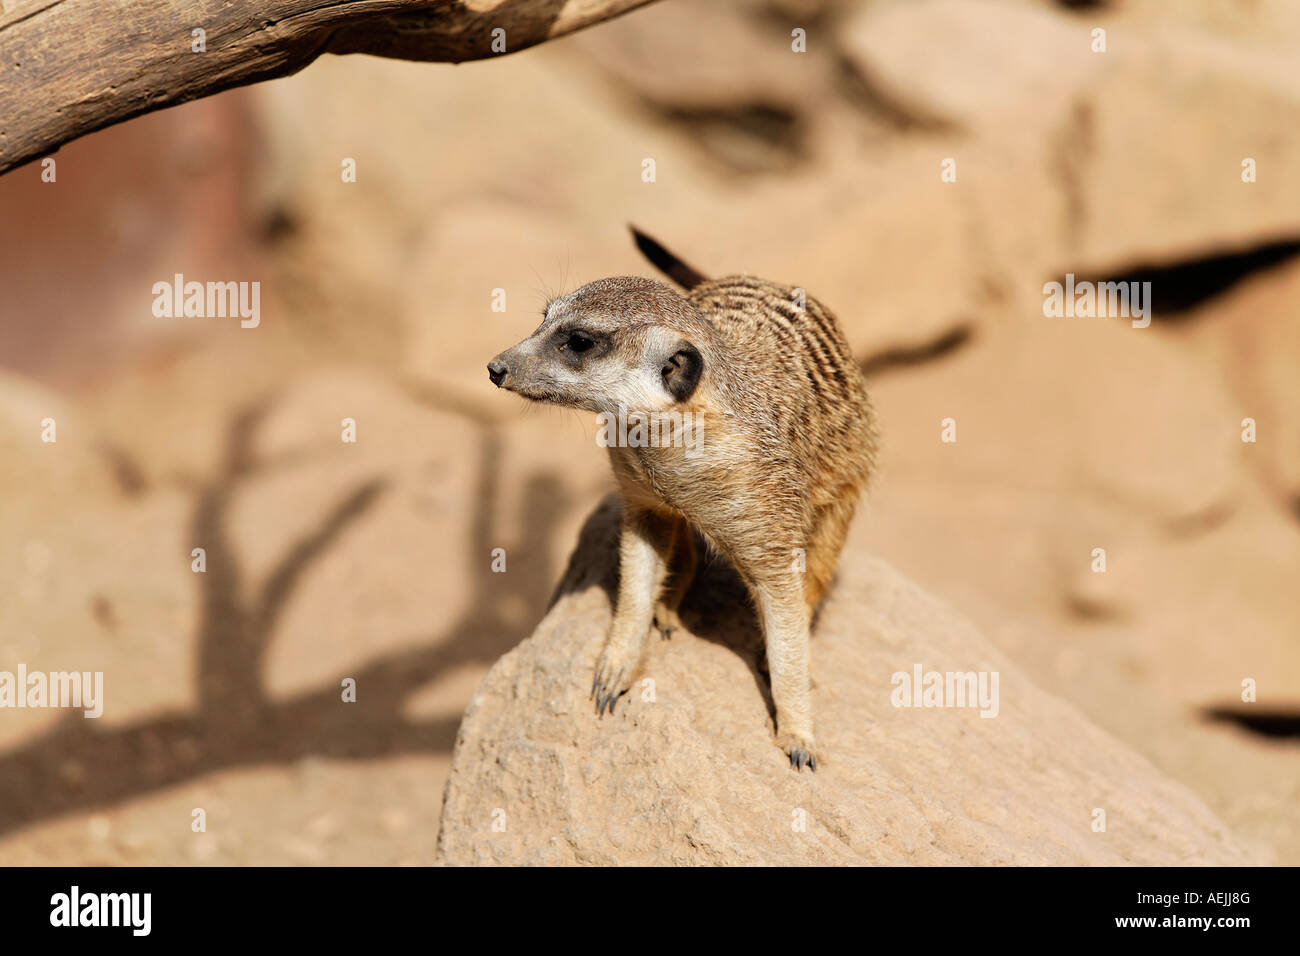 Meerkat, Suricata suricata Stock Photo